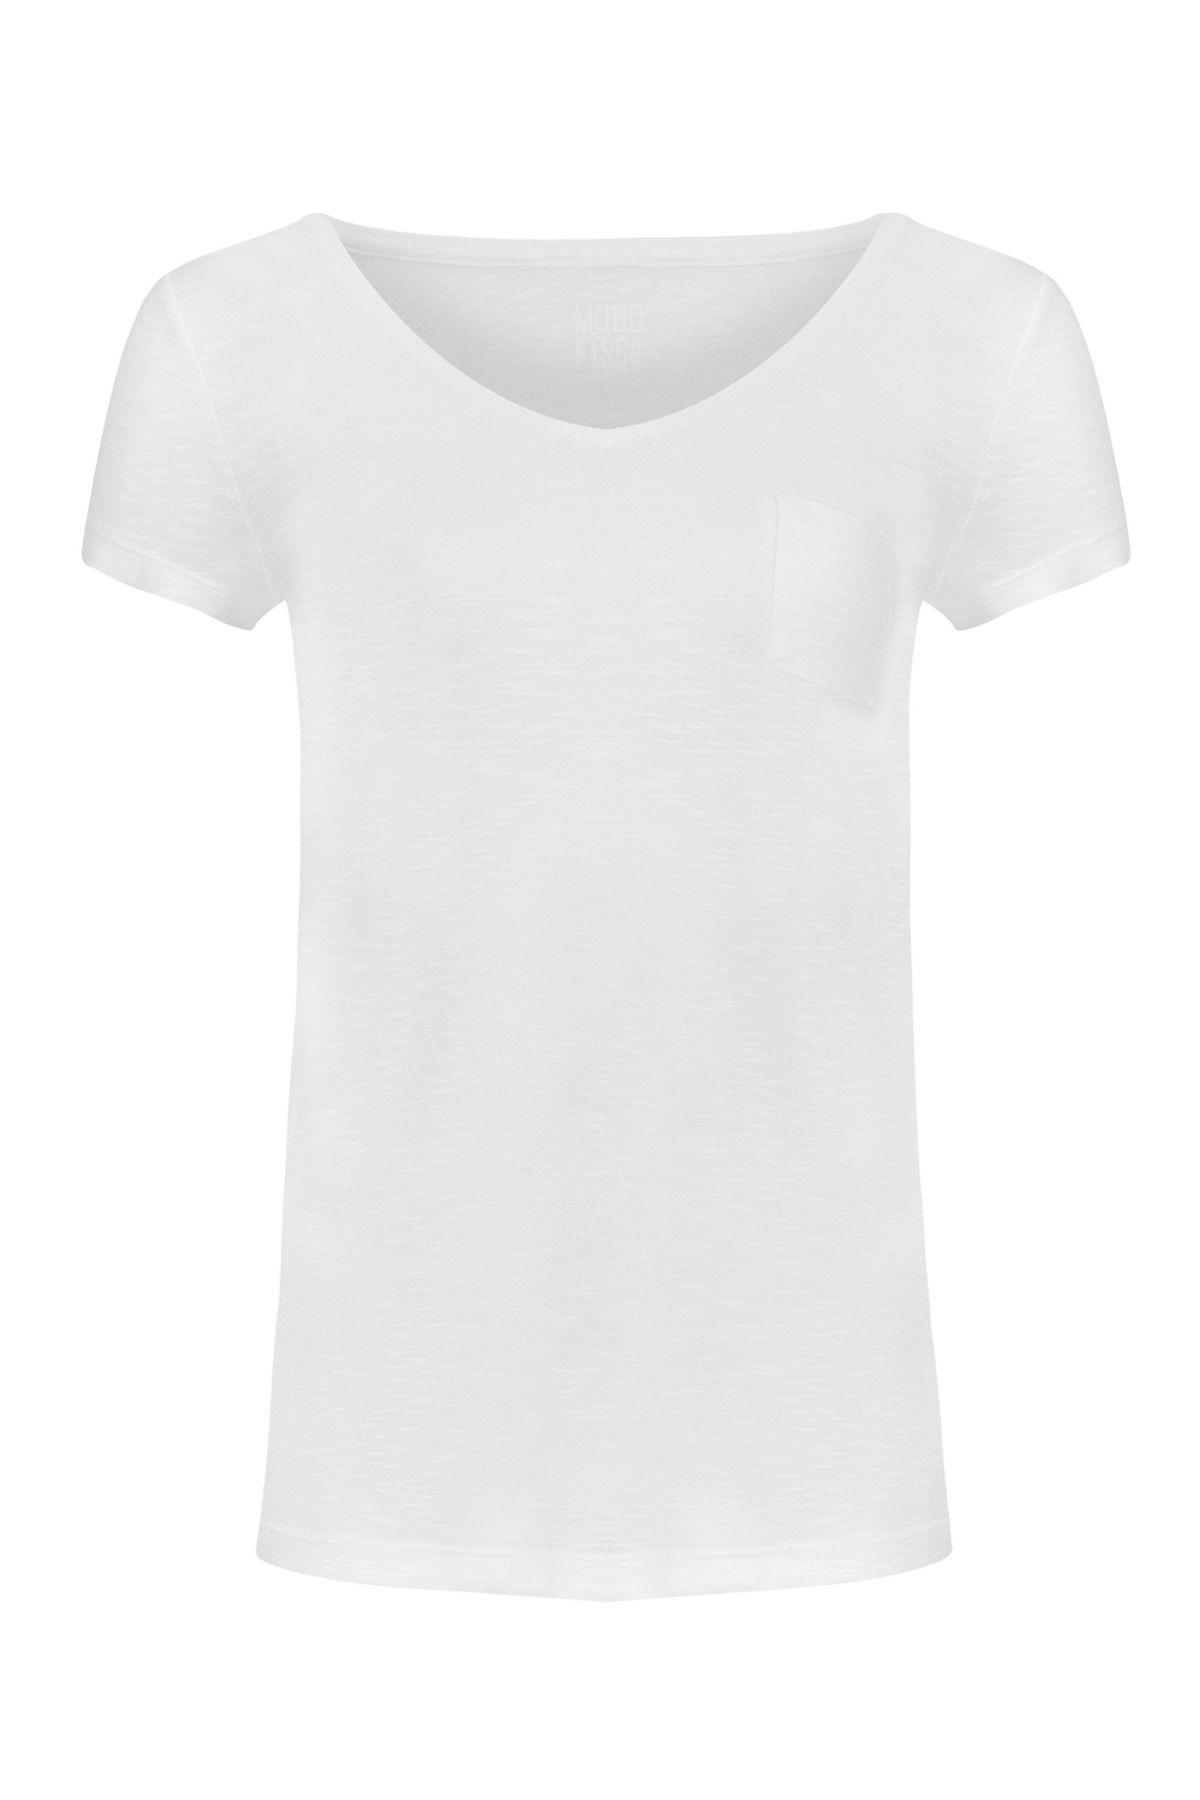 Mudo Kadın Beyaz T-Shirt 1190732